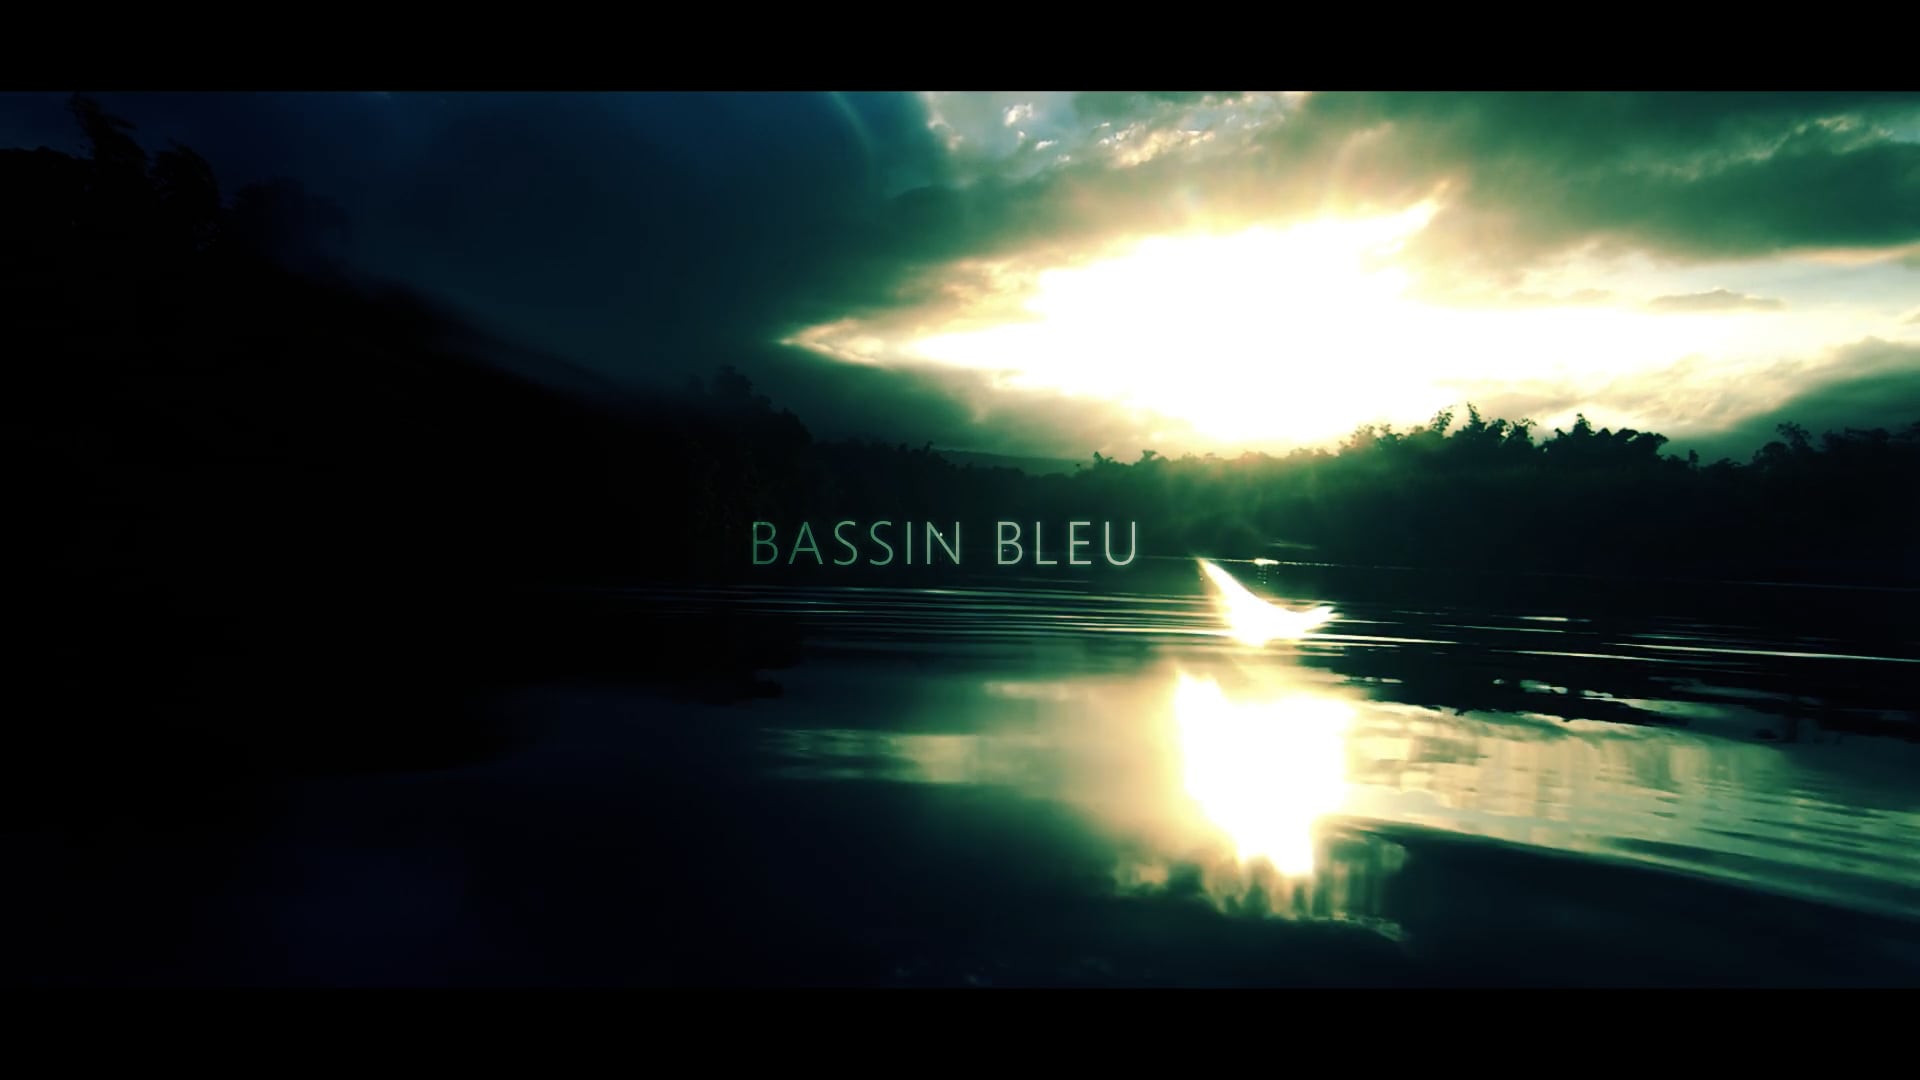 Teaser Documentaire "Bassin Bleu" VOSTFR - Coprod. Réunion la 1ère - France Télévision